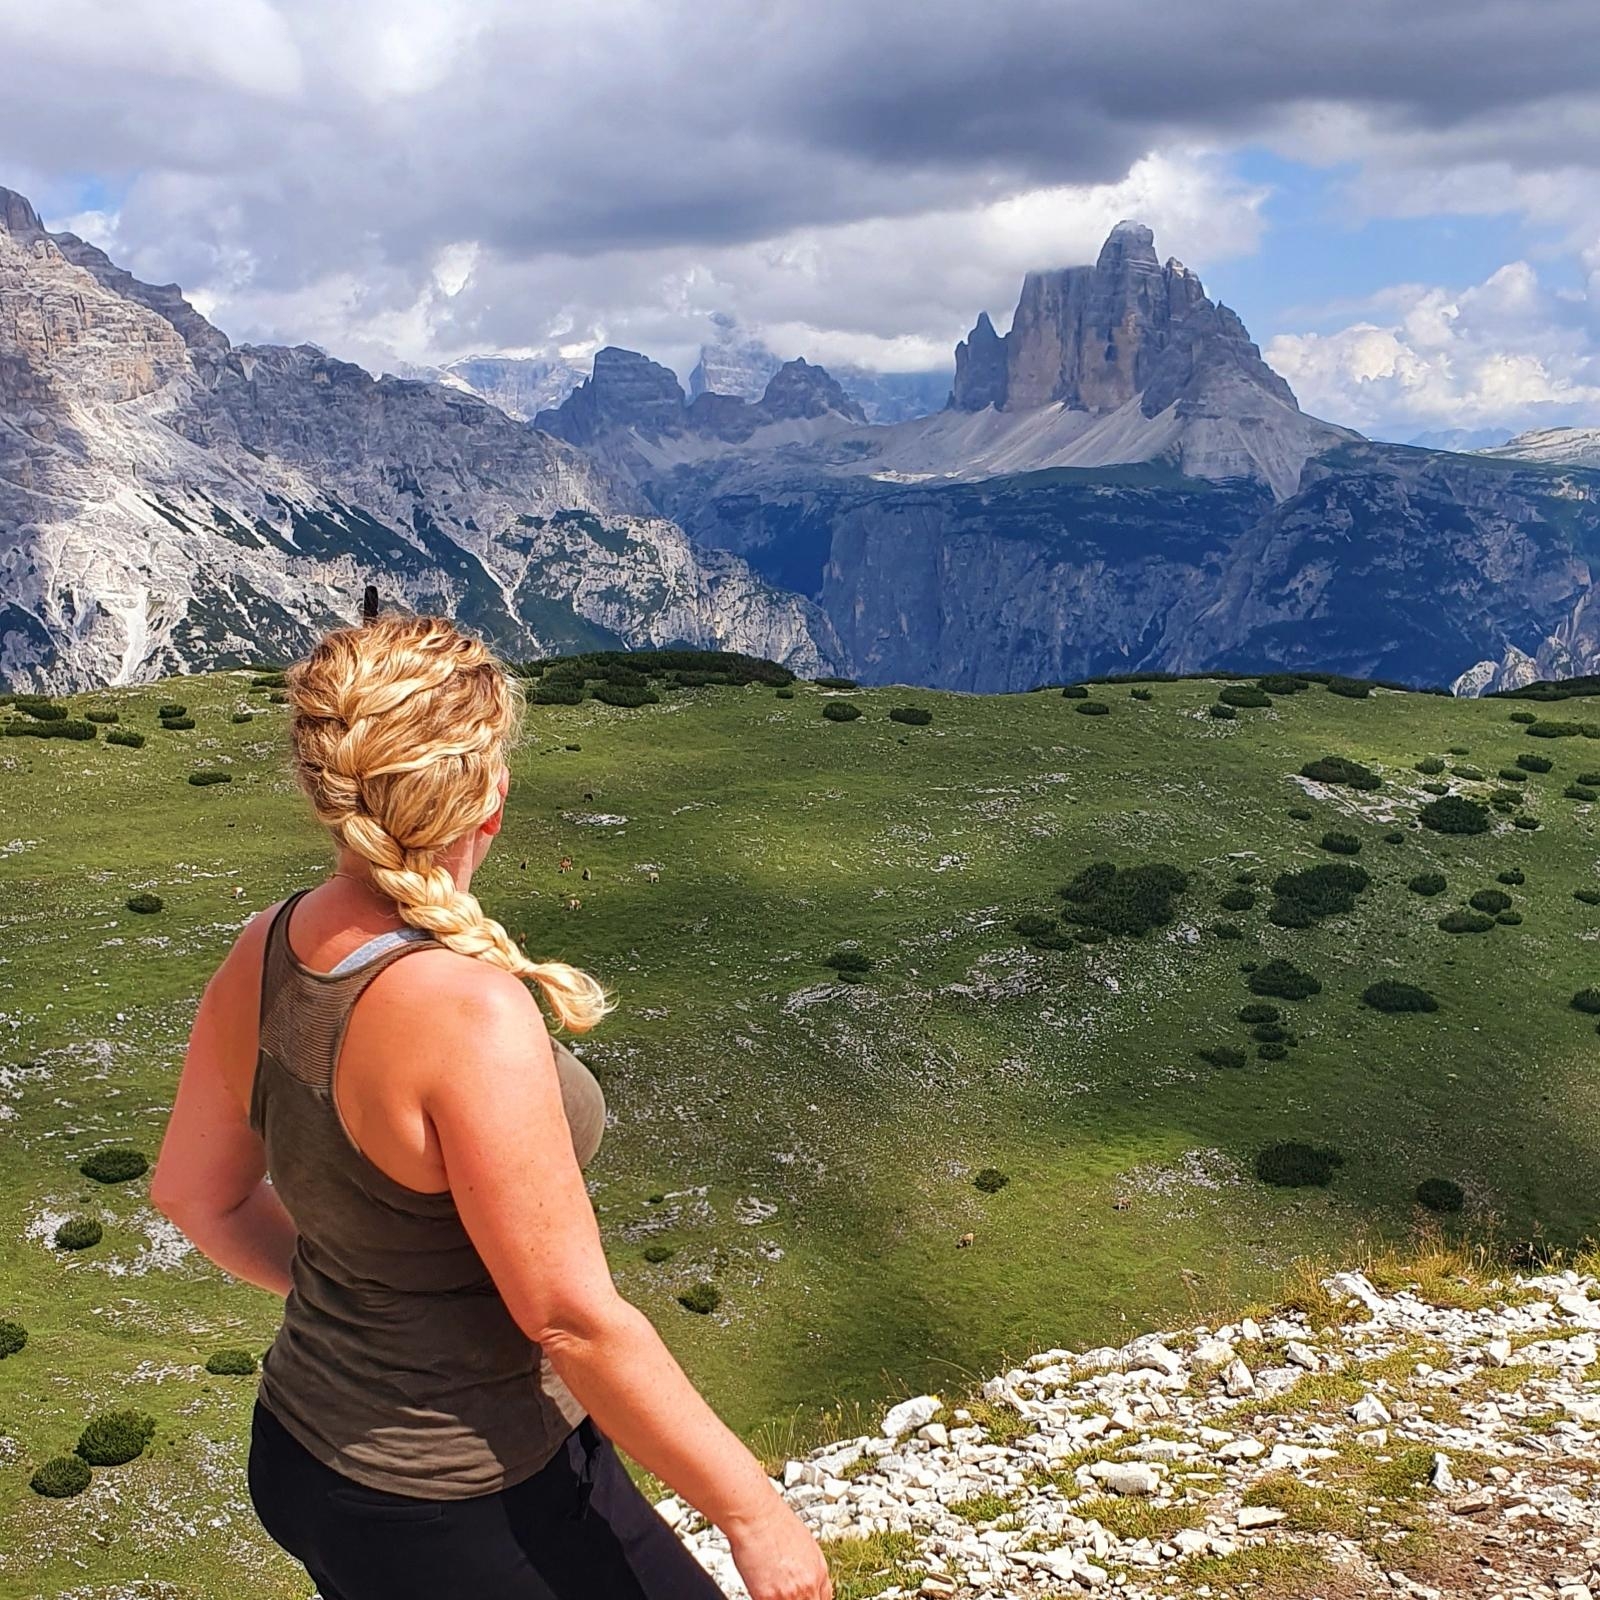 #travelchallenge 
#wandern in den Dolomiten / Südtirol mit Blick auf die drei Zinnen ⛰🧭🏞